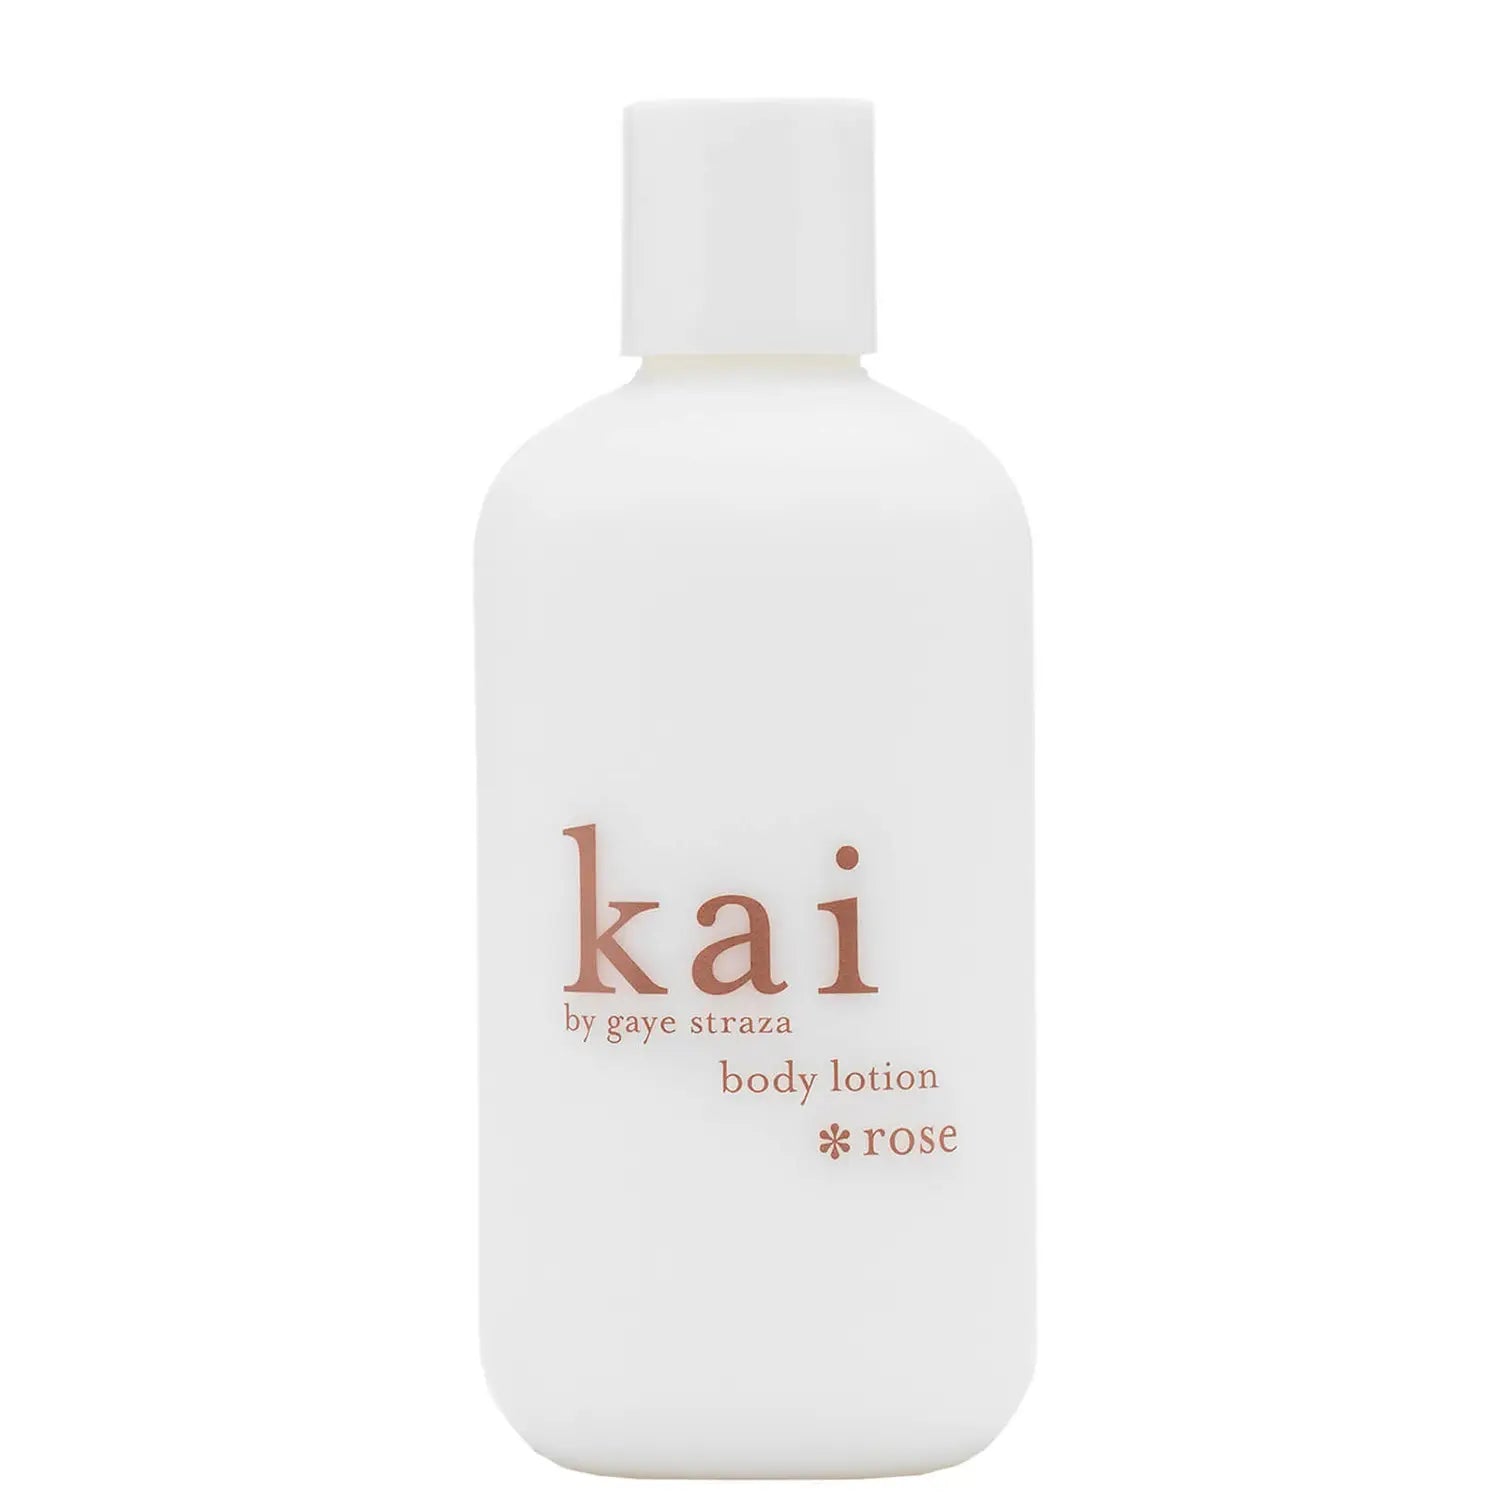 Kai Fragrance Body Lotion